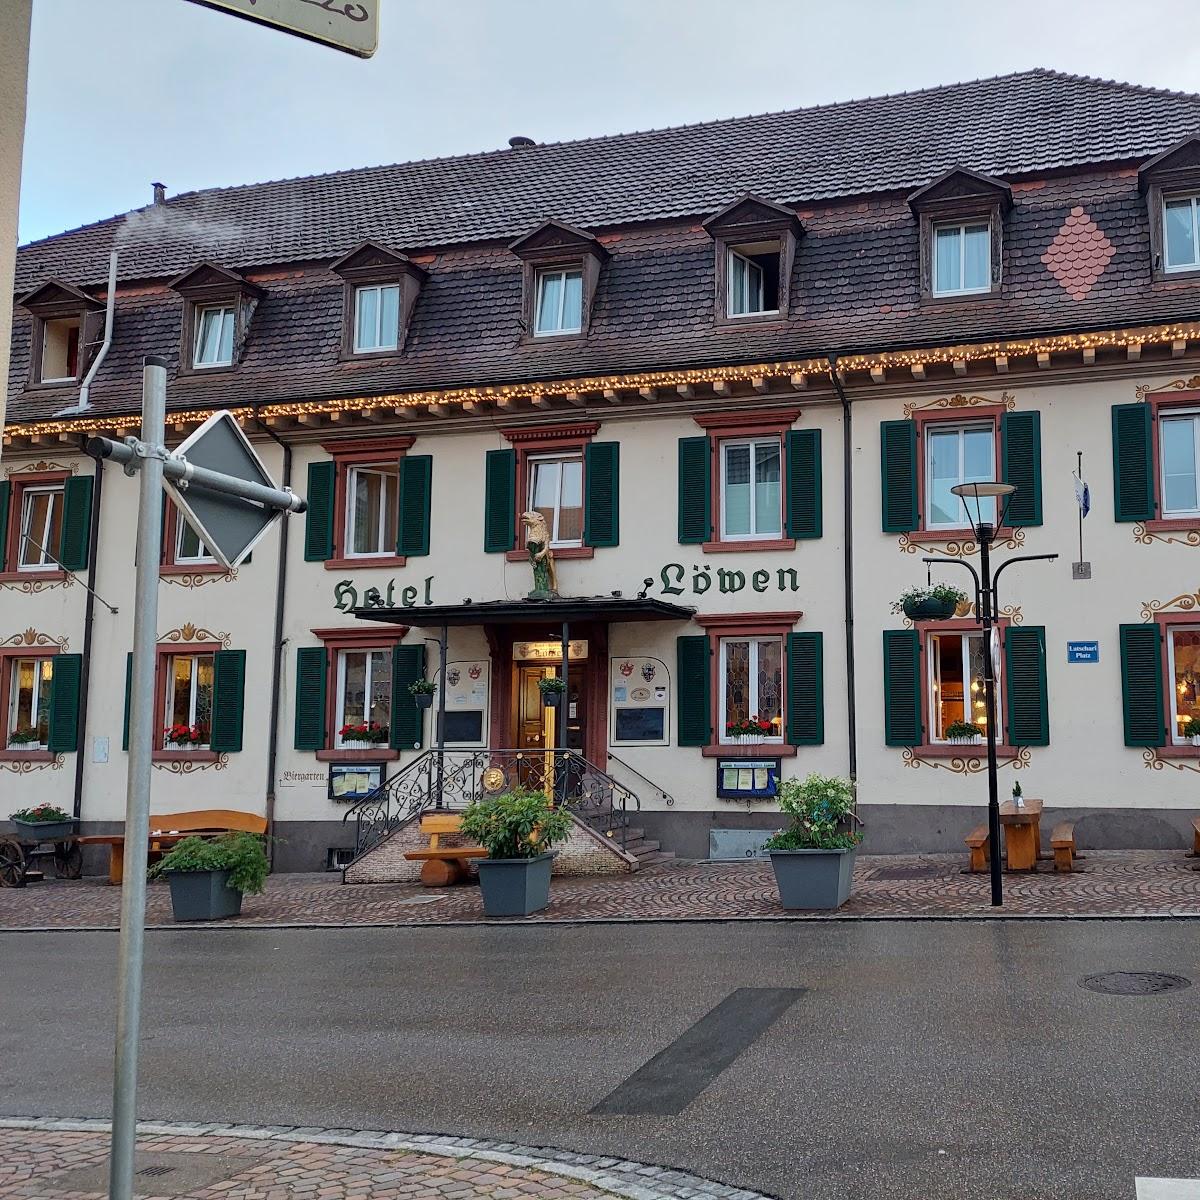 Restaurant "Hotel Löwen" in Zell im Wiesental